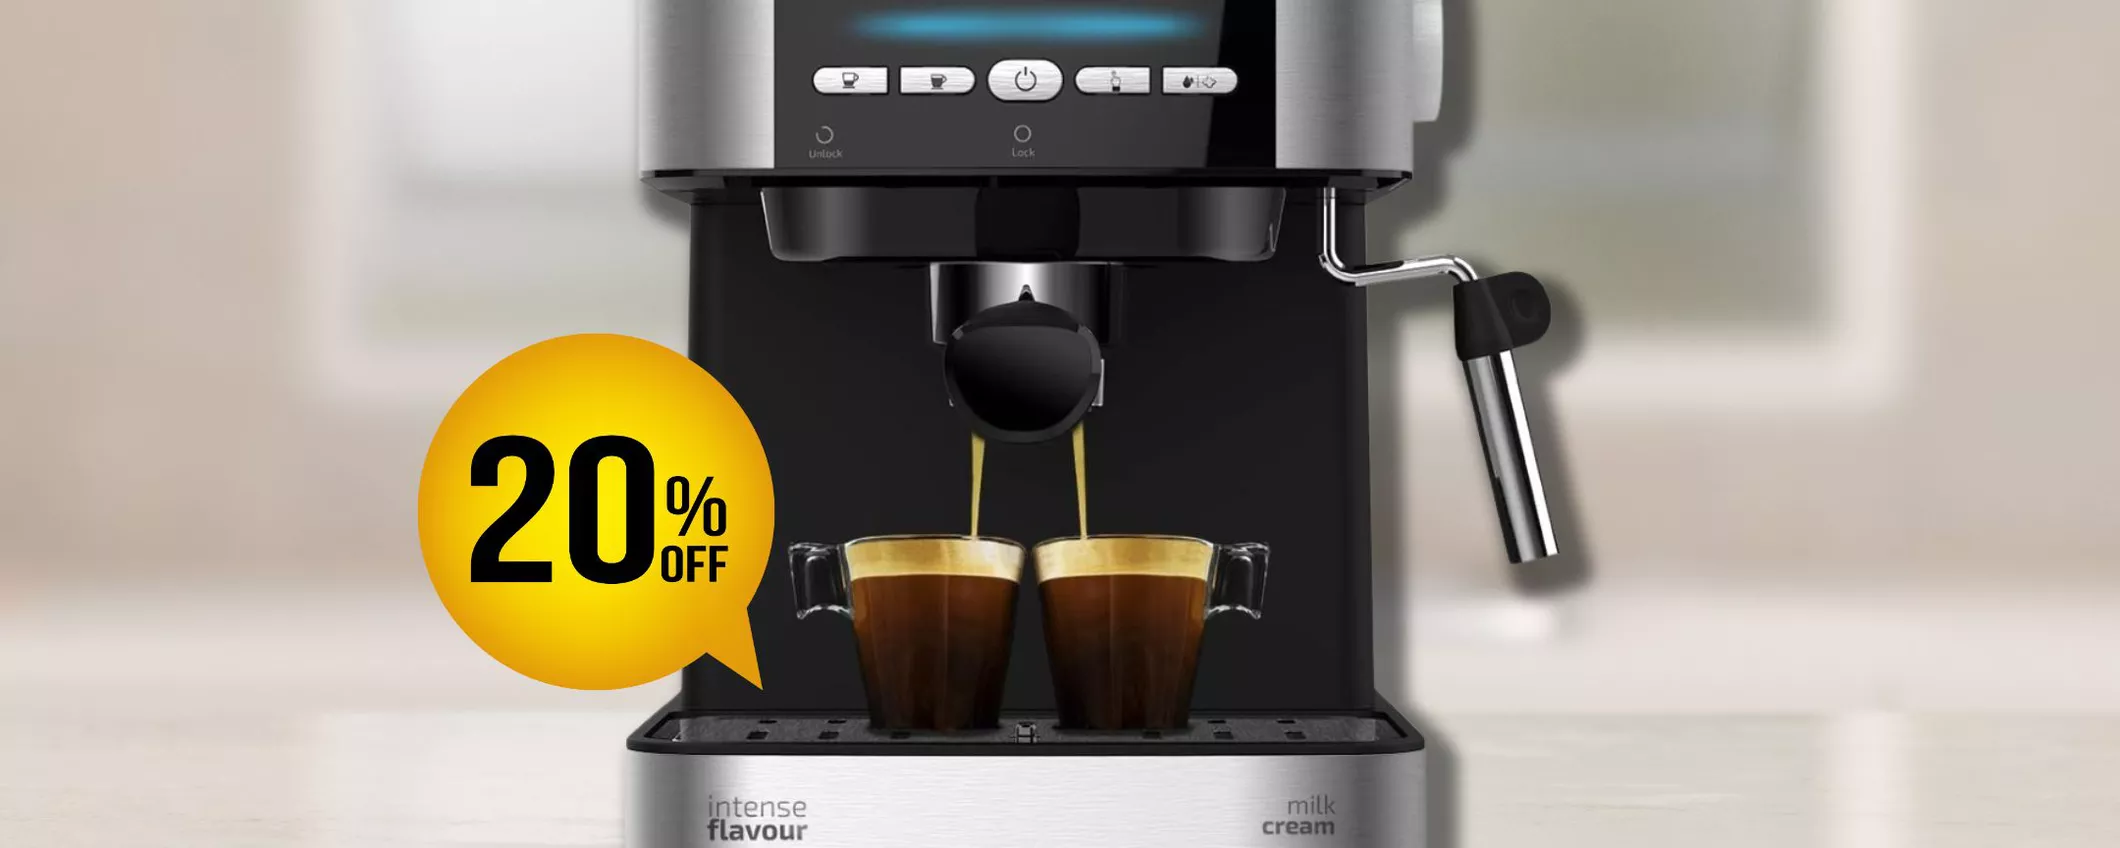 Caffè perfetti con Cecotec Power Espresso: scoprila a soli 79€ su Amazon!